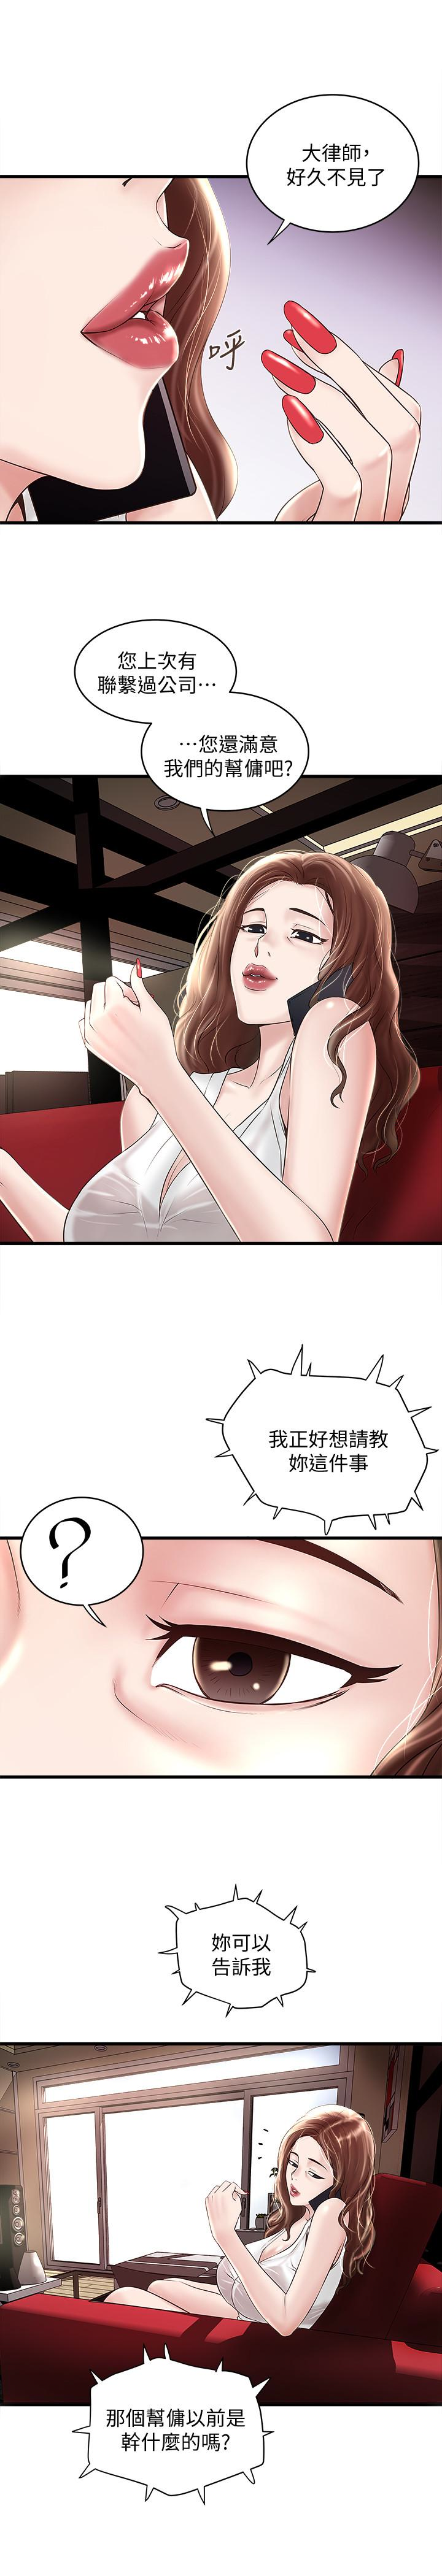 韩国污漫画 下女,初希 第46话-初希充满弹性的肉体 4